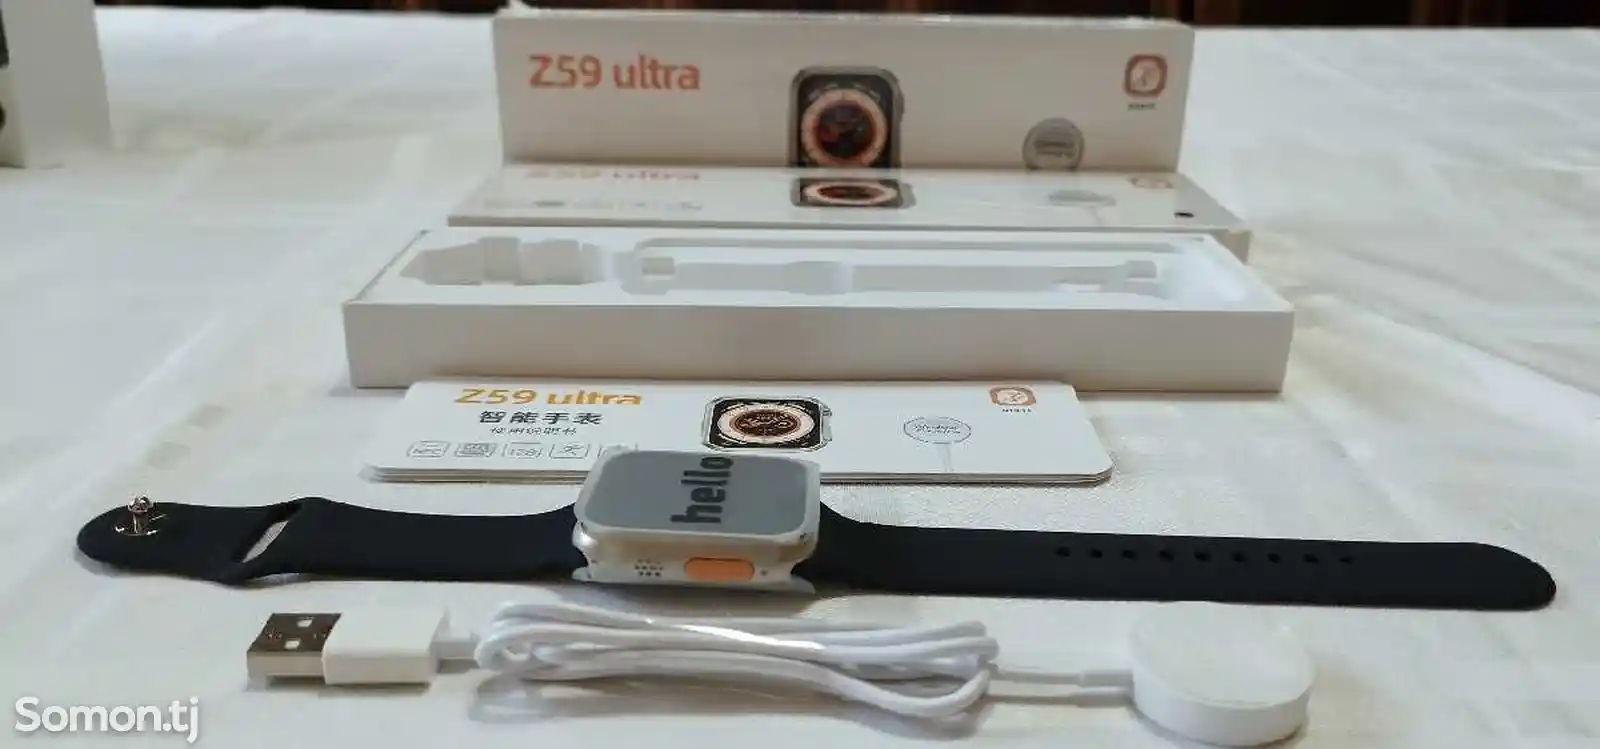 Смарт часы Smart Watch Z59 Ultra-2